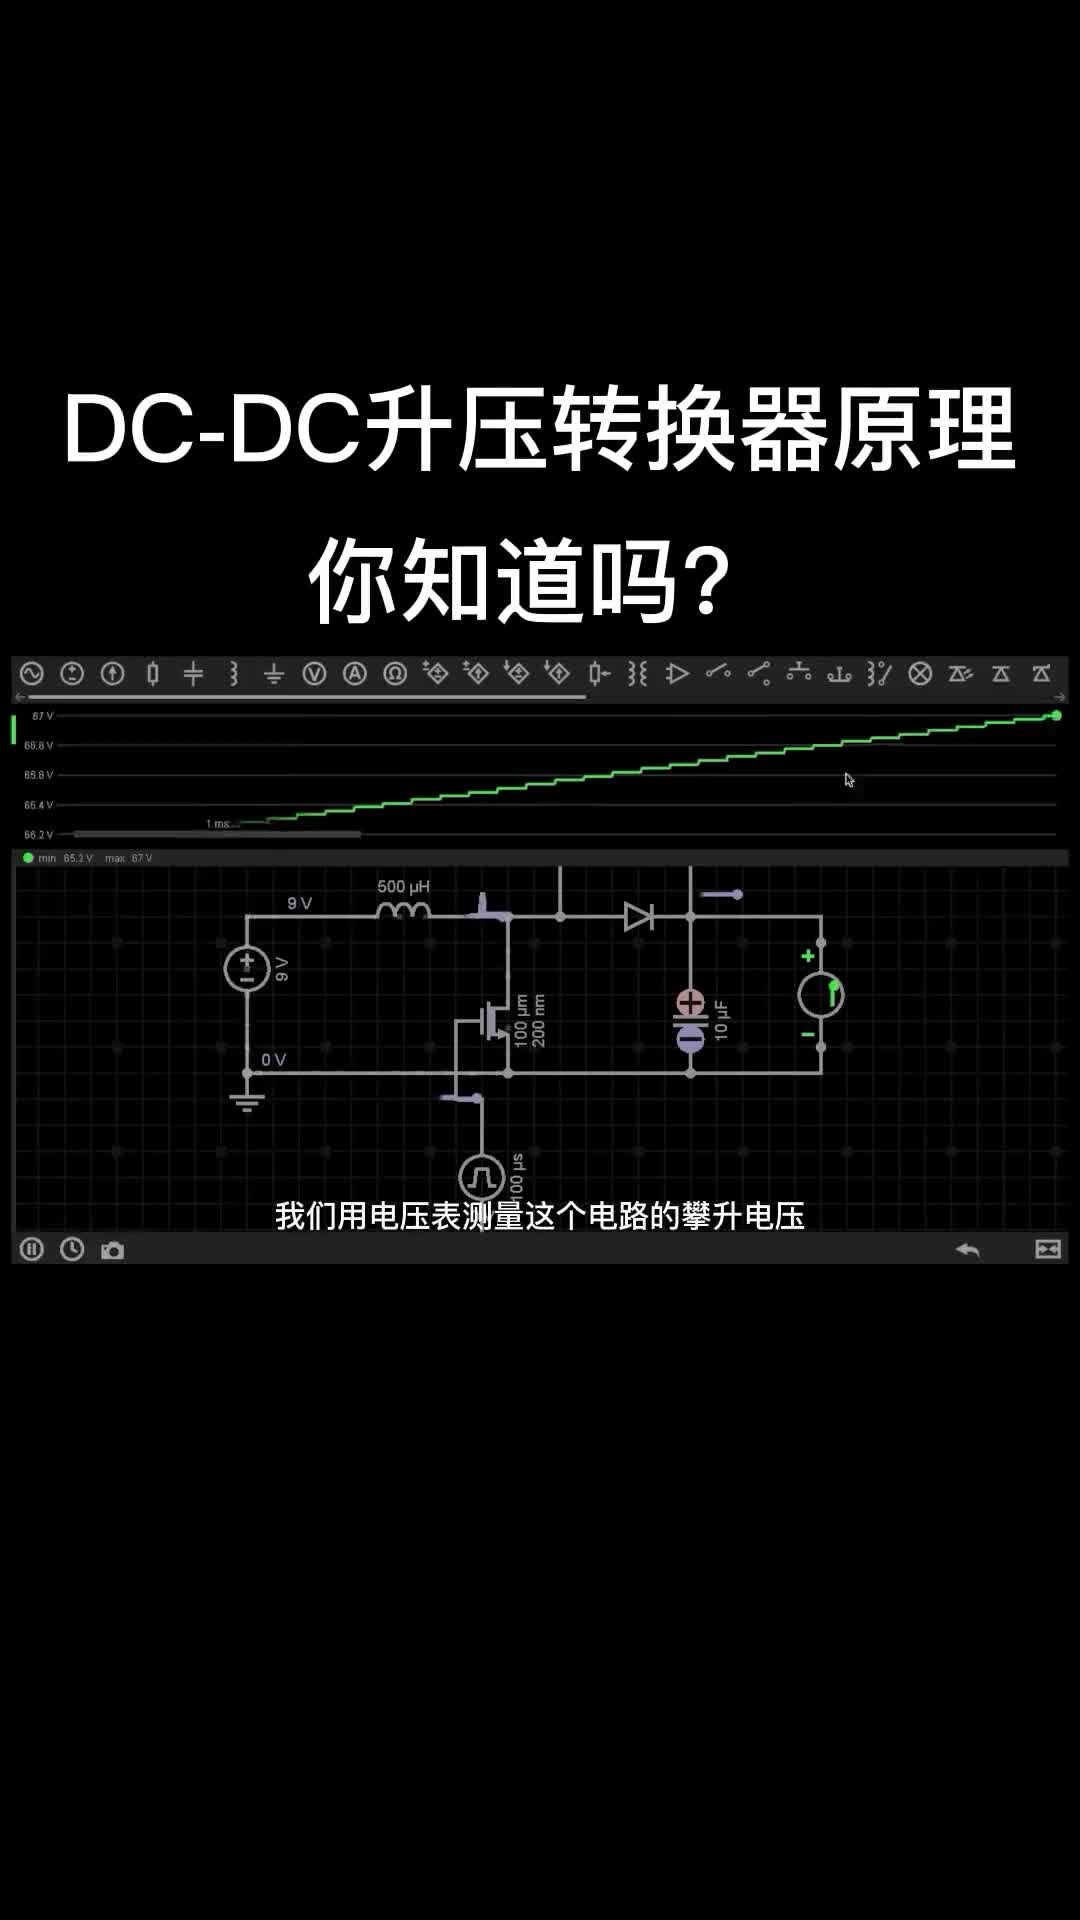 DC-DC升压转换器原理！#电路原理 